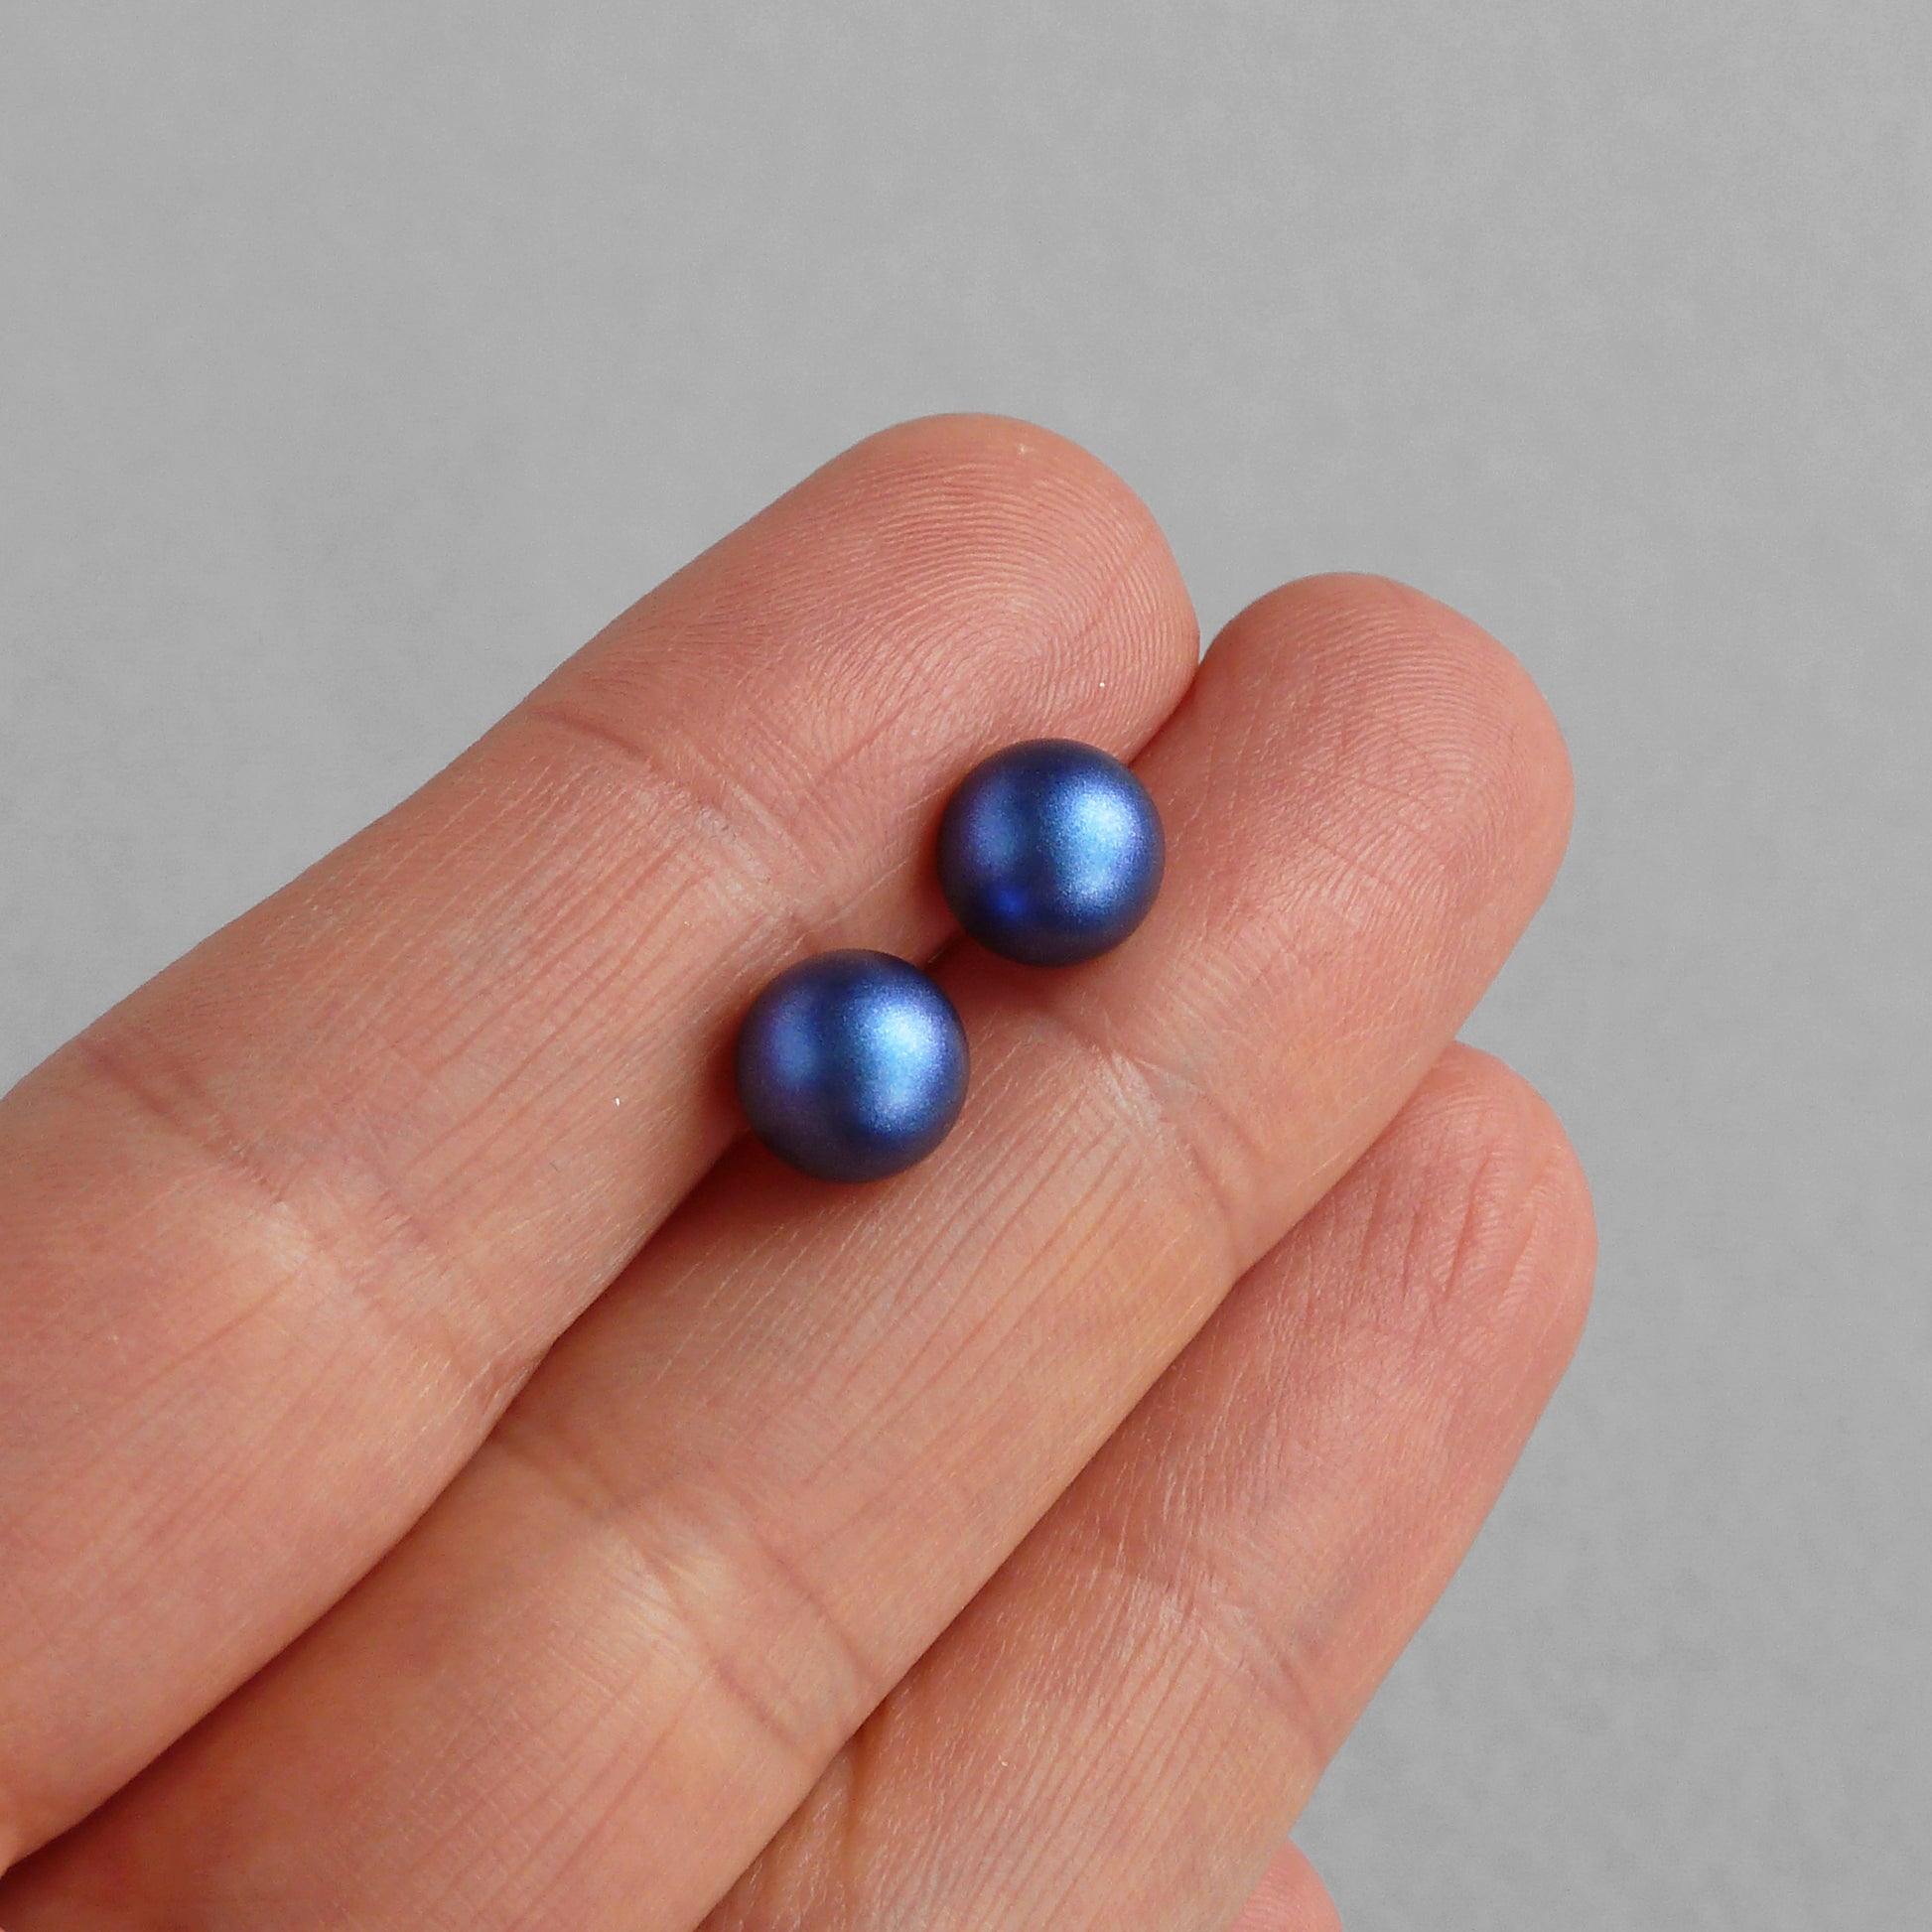 8mm dark blue pearl stud earrings